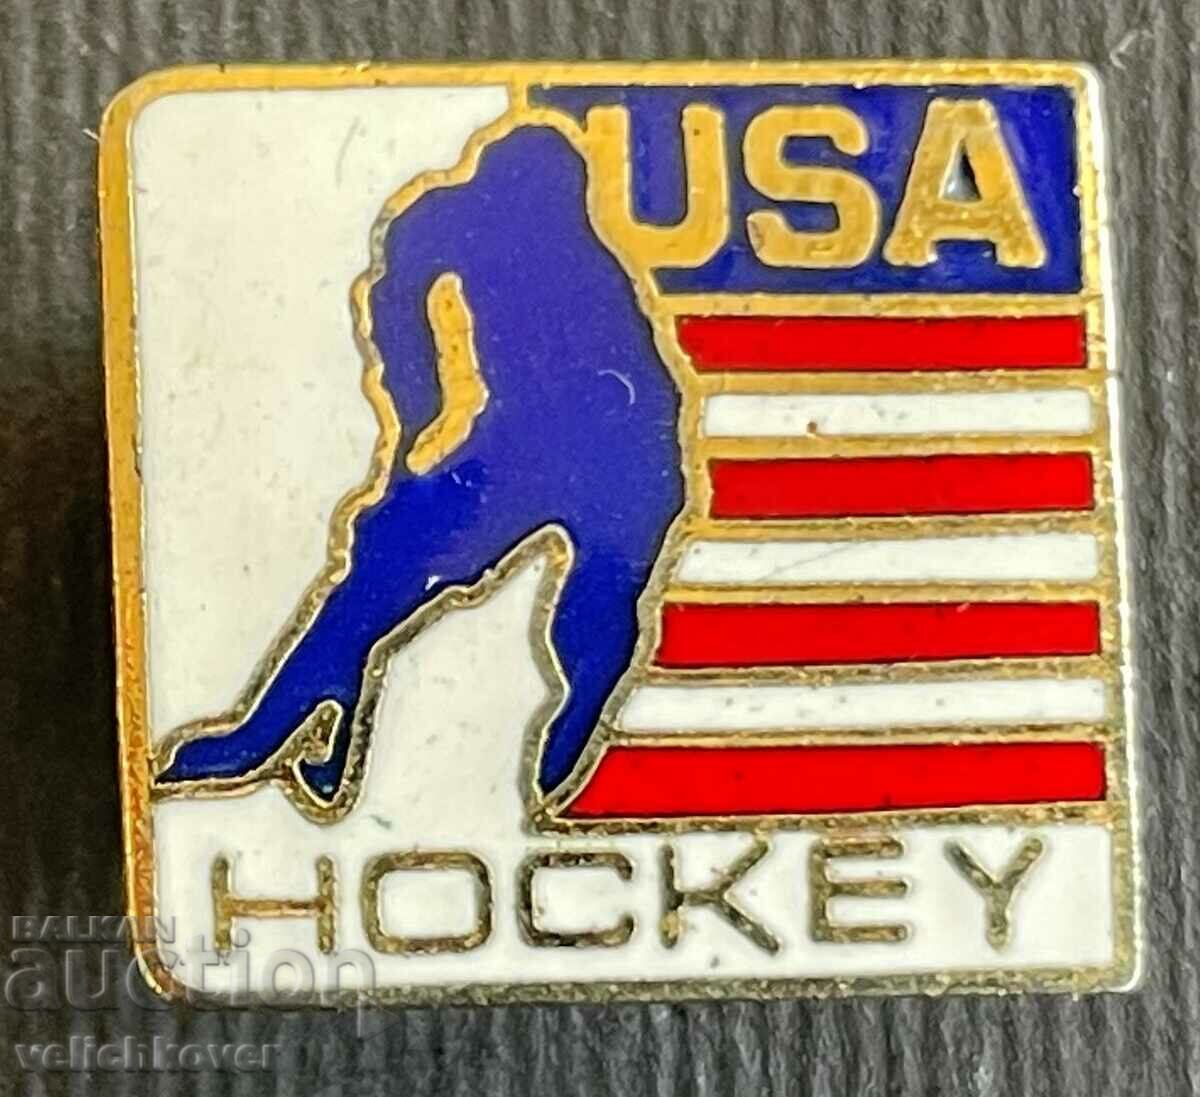 34783 Σήμα ΗΠΑ Σμάλτο της Αμερικανικής Ομοσπονδίας Χόκεϋ Πάγου